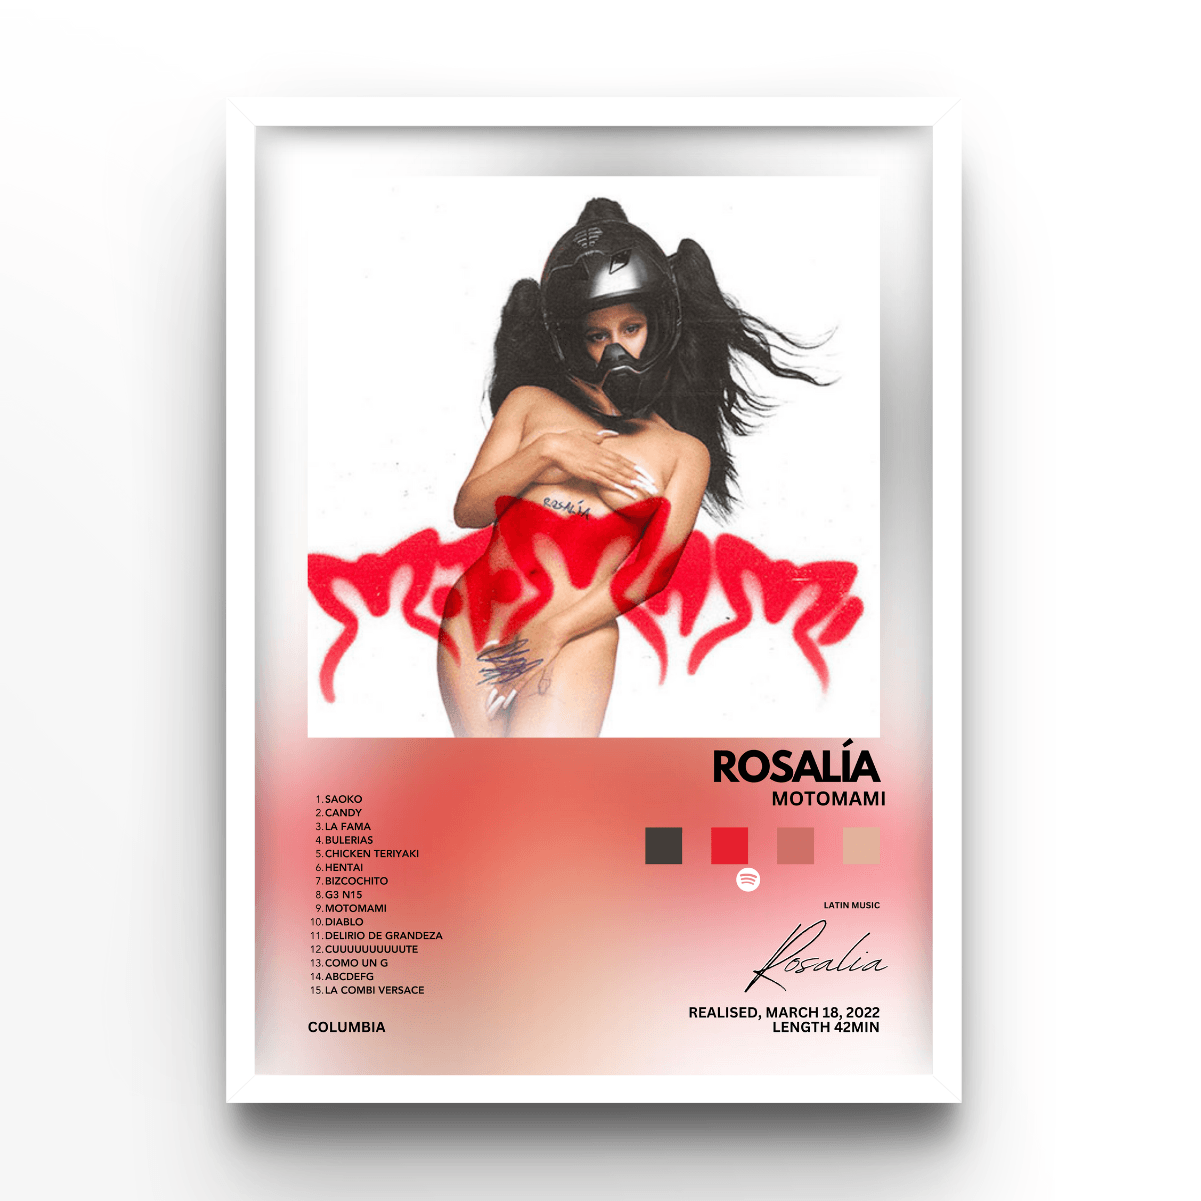 Rosalia Motomami - A4, A3, A2 Posters Base - Poster Print Shop / Art Prints / PostersBase